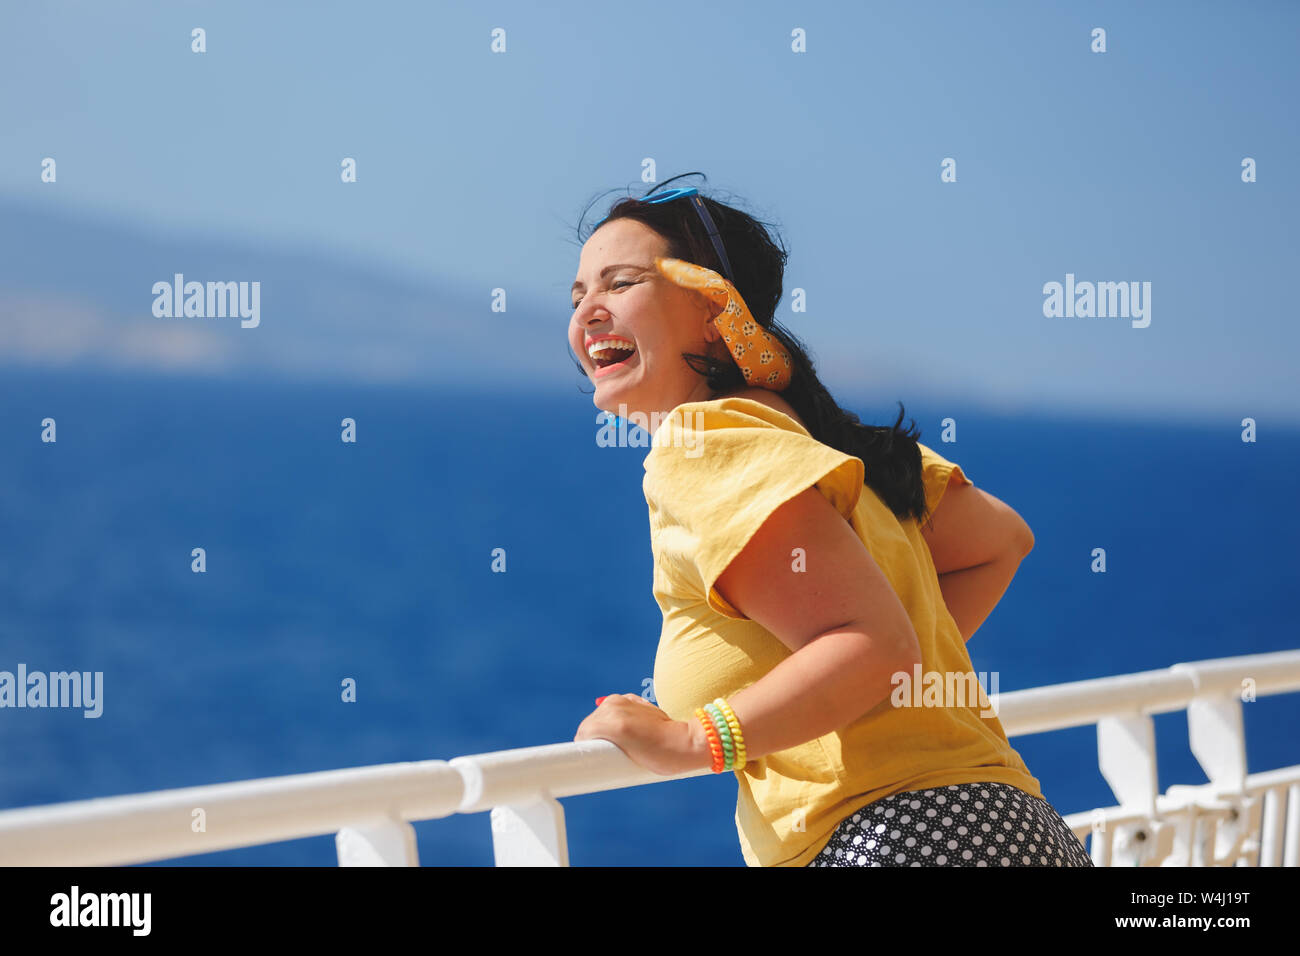 Glückliche Frau an einer Kreuzfahrt Urlaub. stehend auf Deck eines Kreuzfahrtschiffes, starken Wind Ihr Haar weht Stockfoto